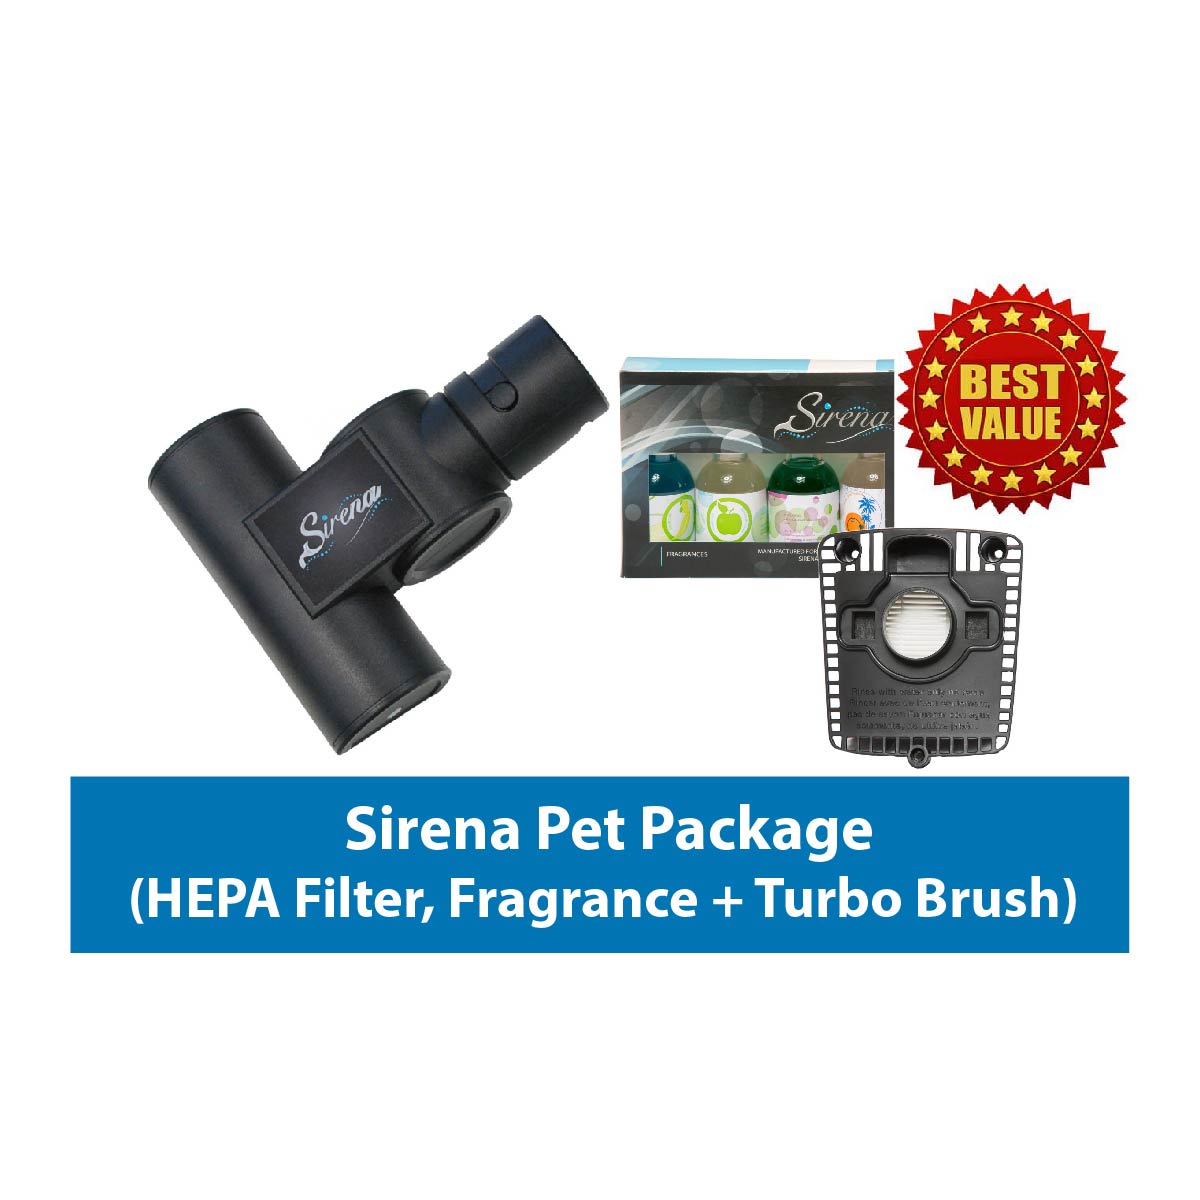 Sirena Pet Package